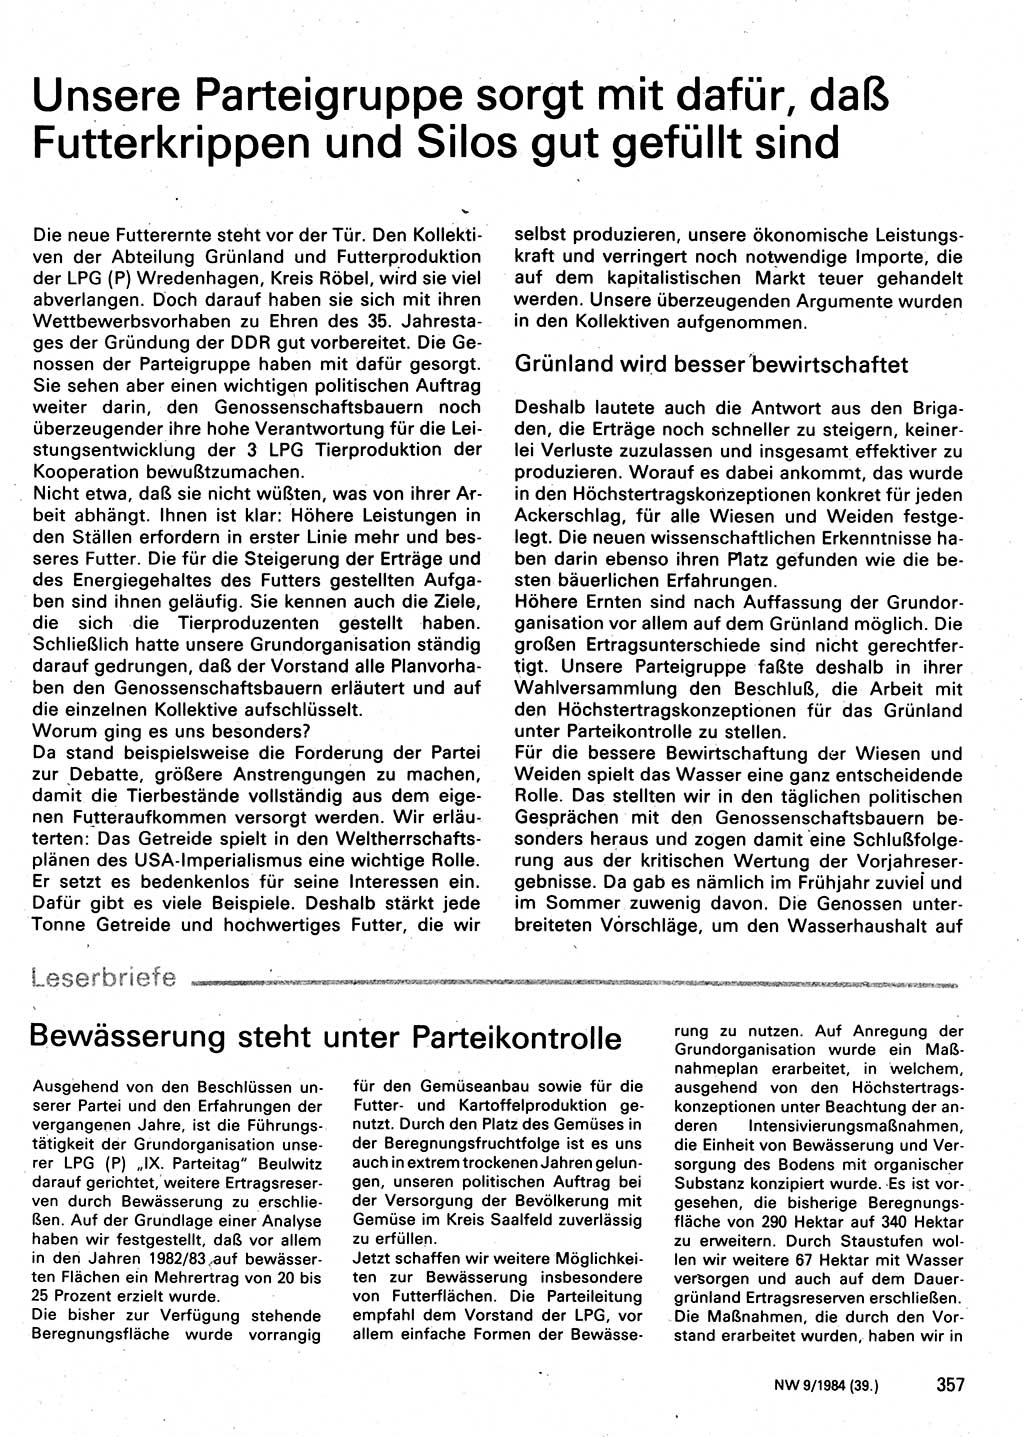 Neuer Weg (NW), Organ des Zentralkomitees (ZK) der SED (Sozialistische Einheitspartei Deutschlands) für Fragen des Parteilebens, 39. Jahrgang [Deutsche Demokratische Republik (DDR)] 1984, Seite 357 (NW ZK SED DDR 1984, S. 357)